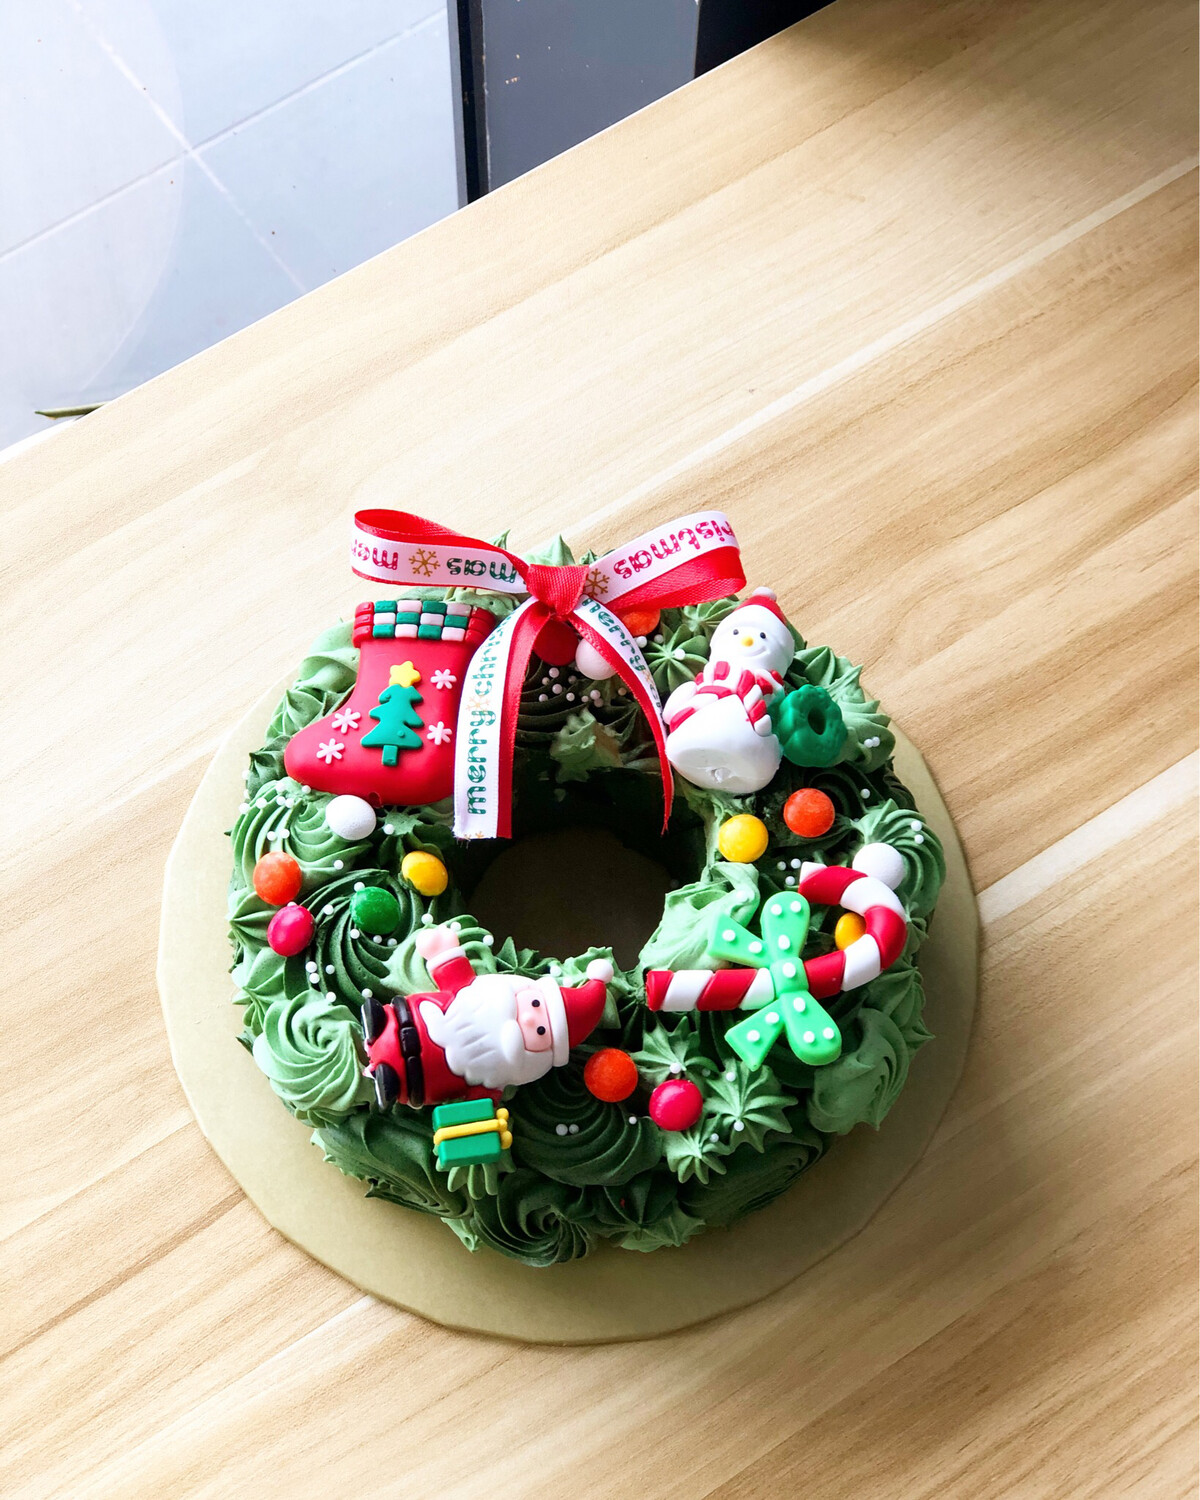 Festive - Christmas / Xmas / Wreath